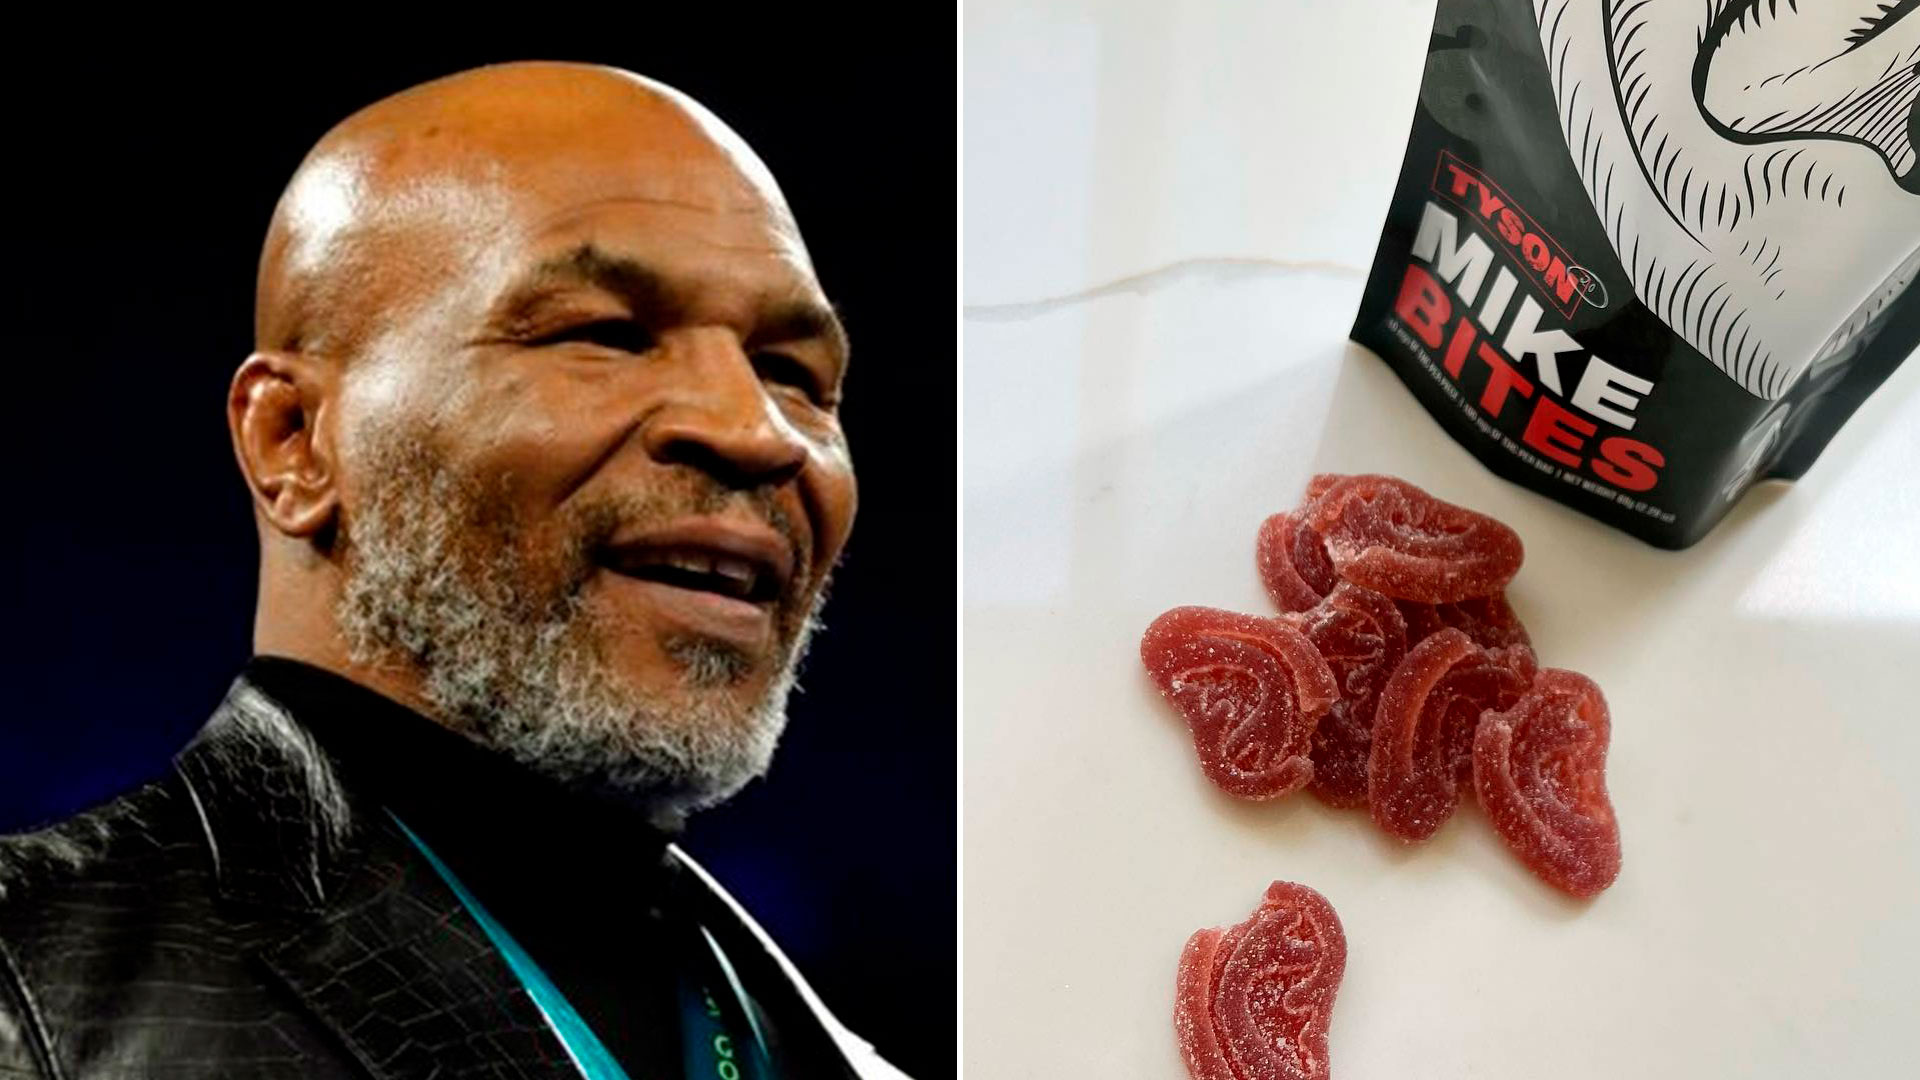 Mike Tyson sacó al mercado unos comestibles de marihuana en forma de orejas mordidas.